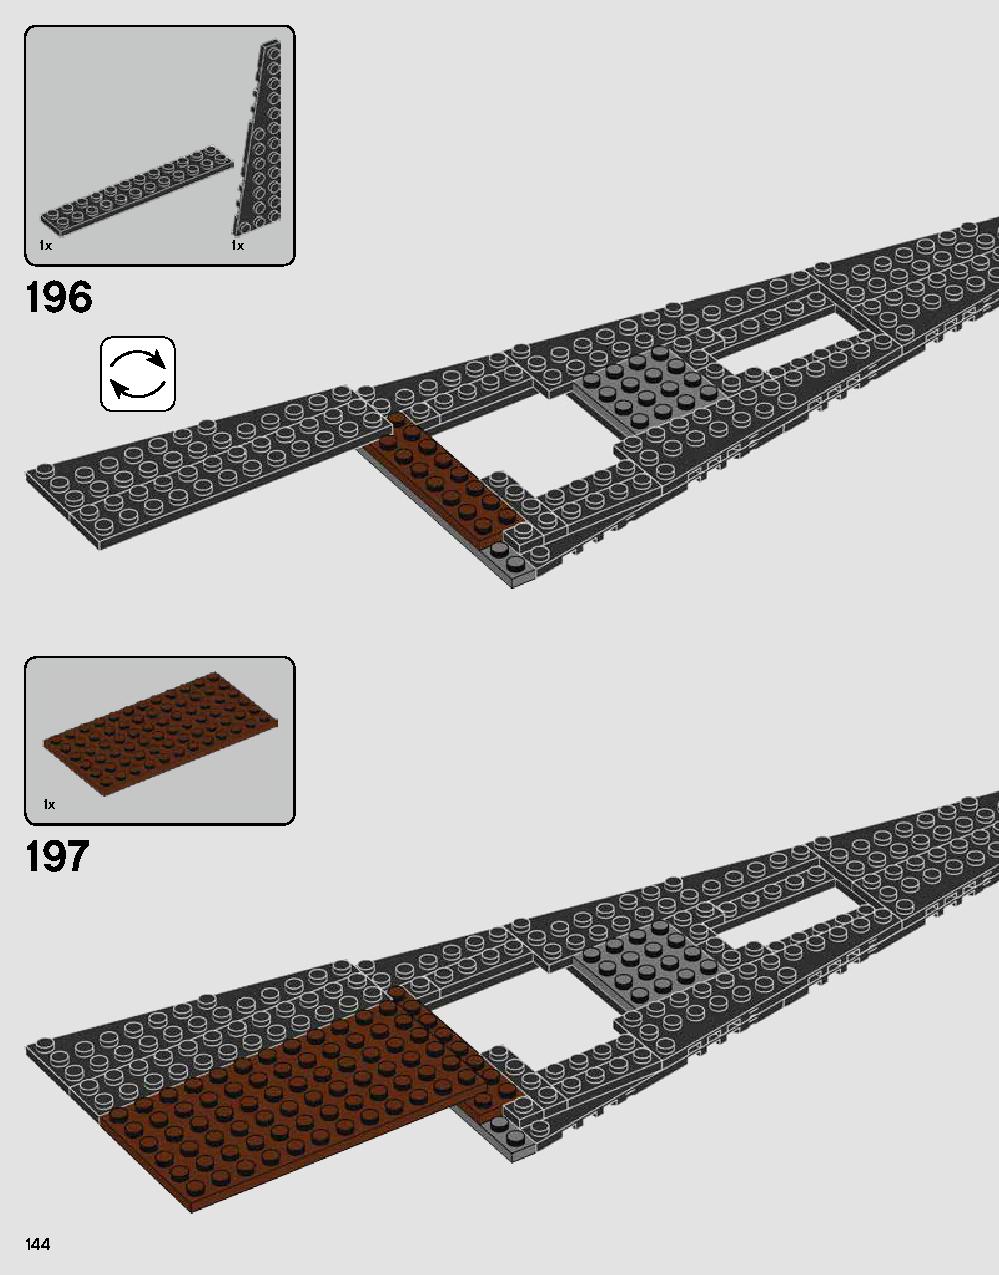 ダース・ベイダーの城 75251 レゴの商品情報 レゴの説明書・組立方法 144 page